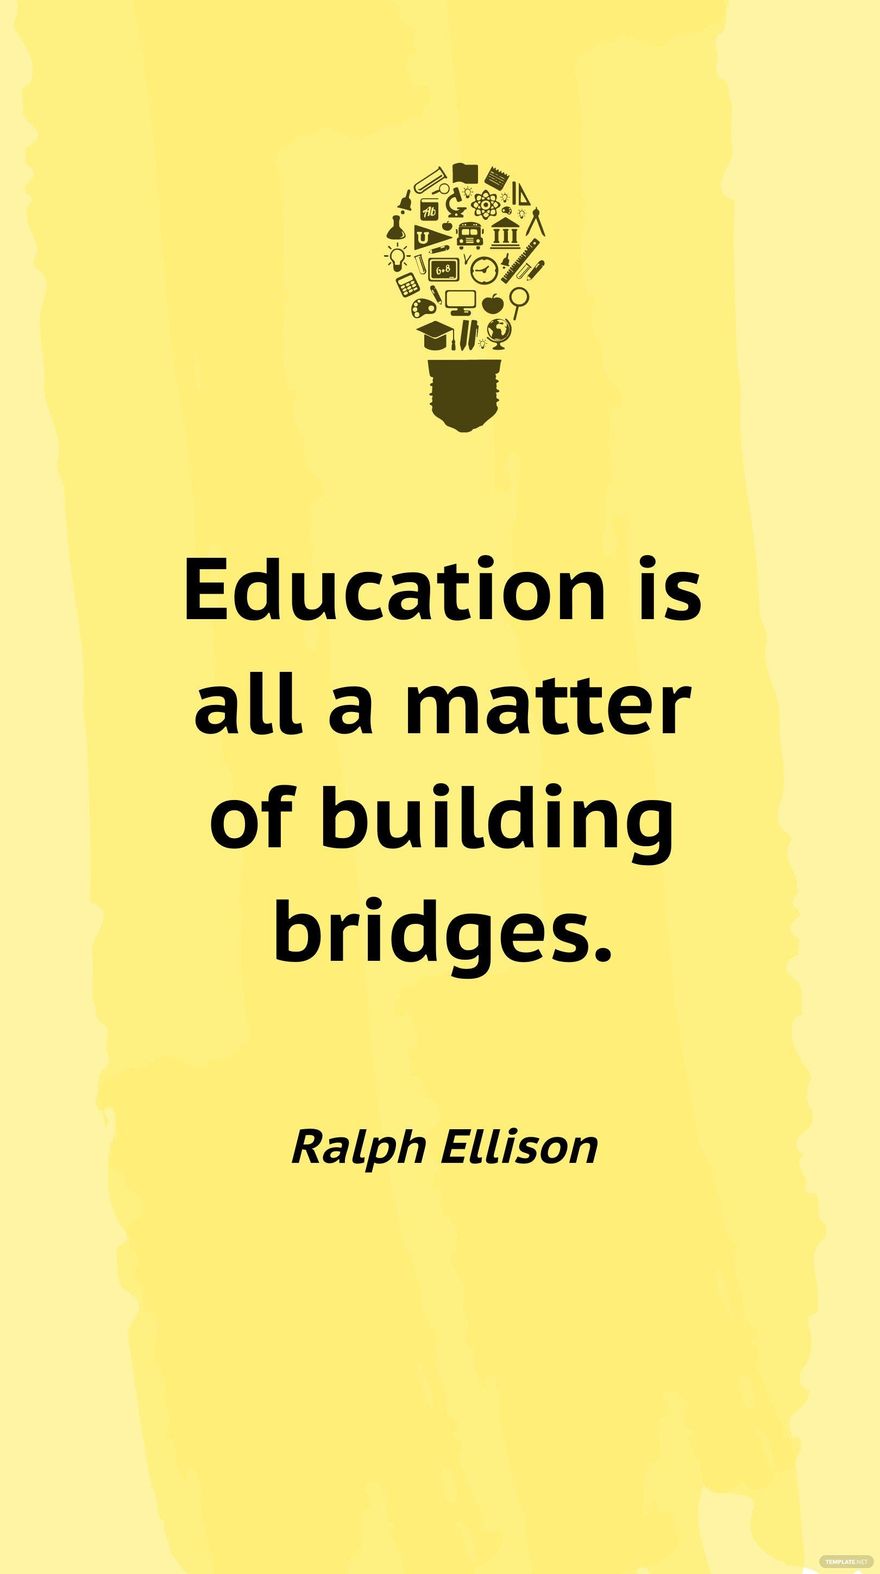 Ralph Ellison - Education is all a matter of building bridges.